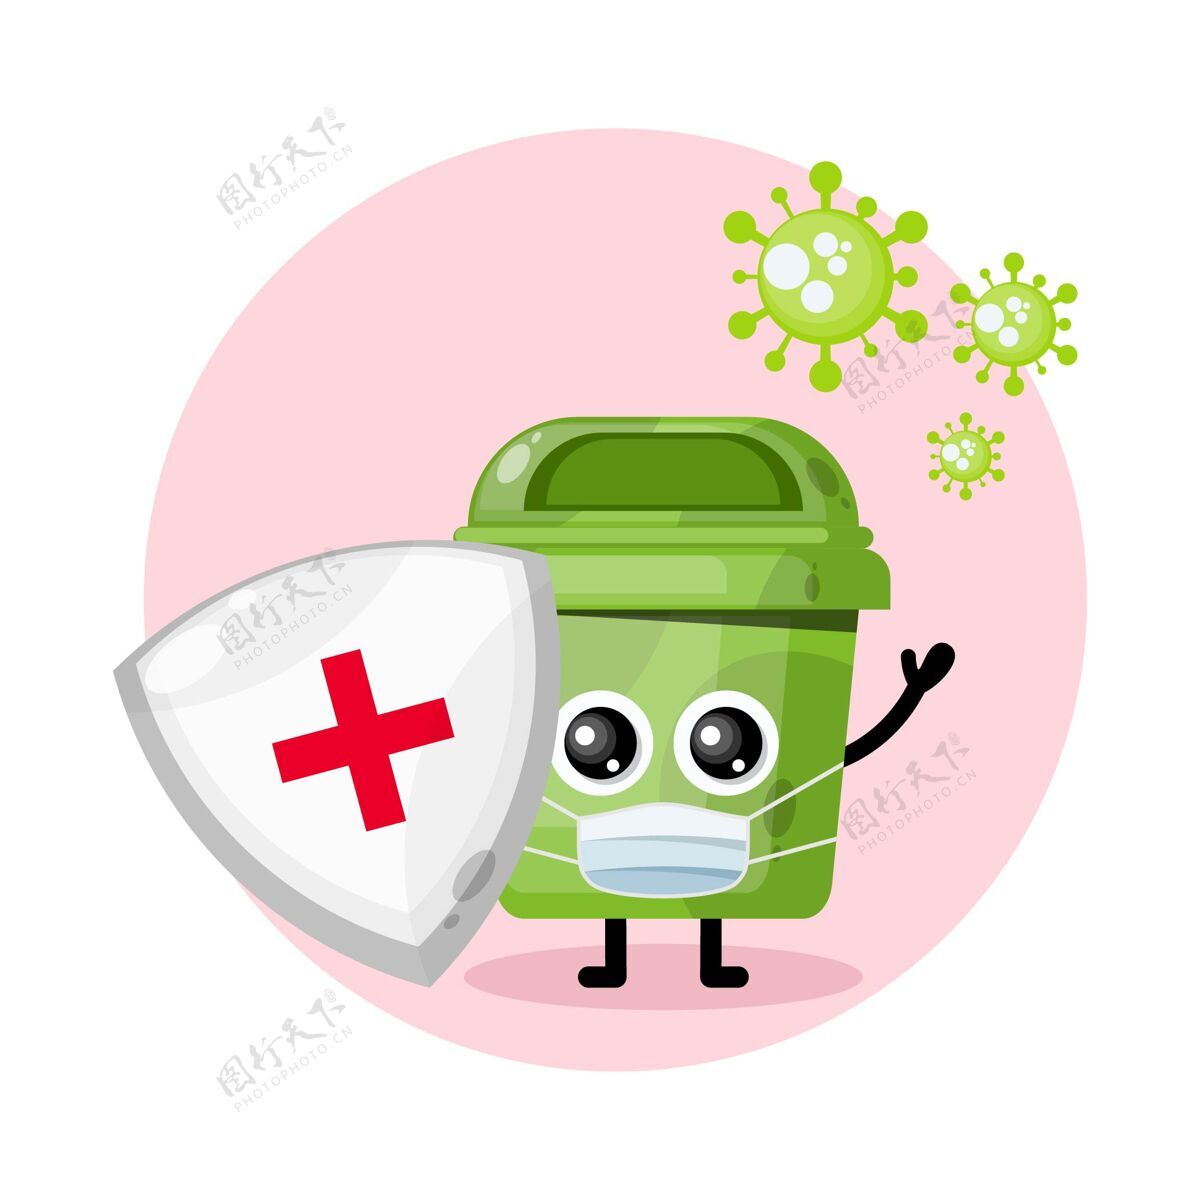 吉祥物标志垃圾盾面具吉祥物字符标志冠状病毒卡通人物垃圾桶